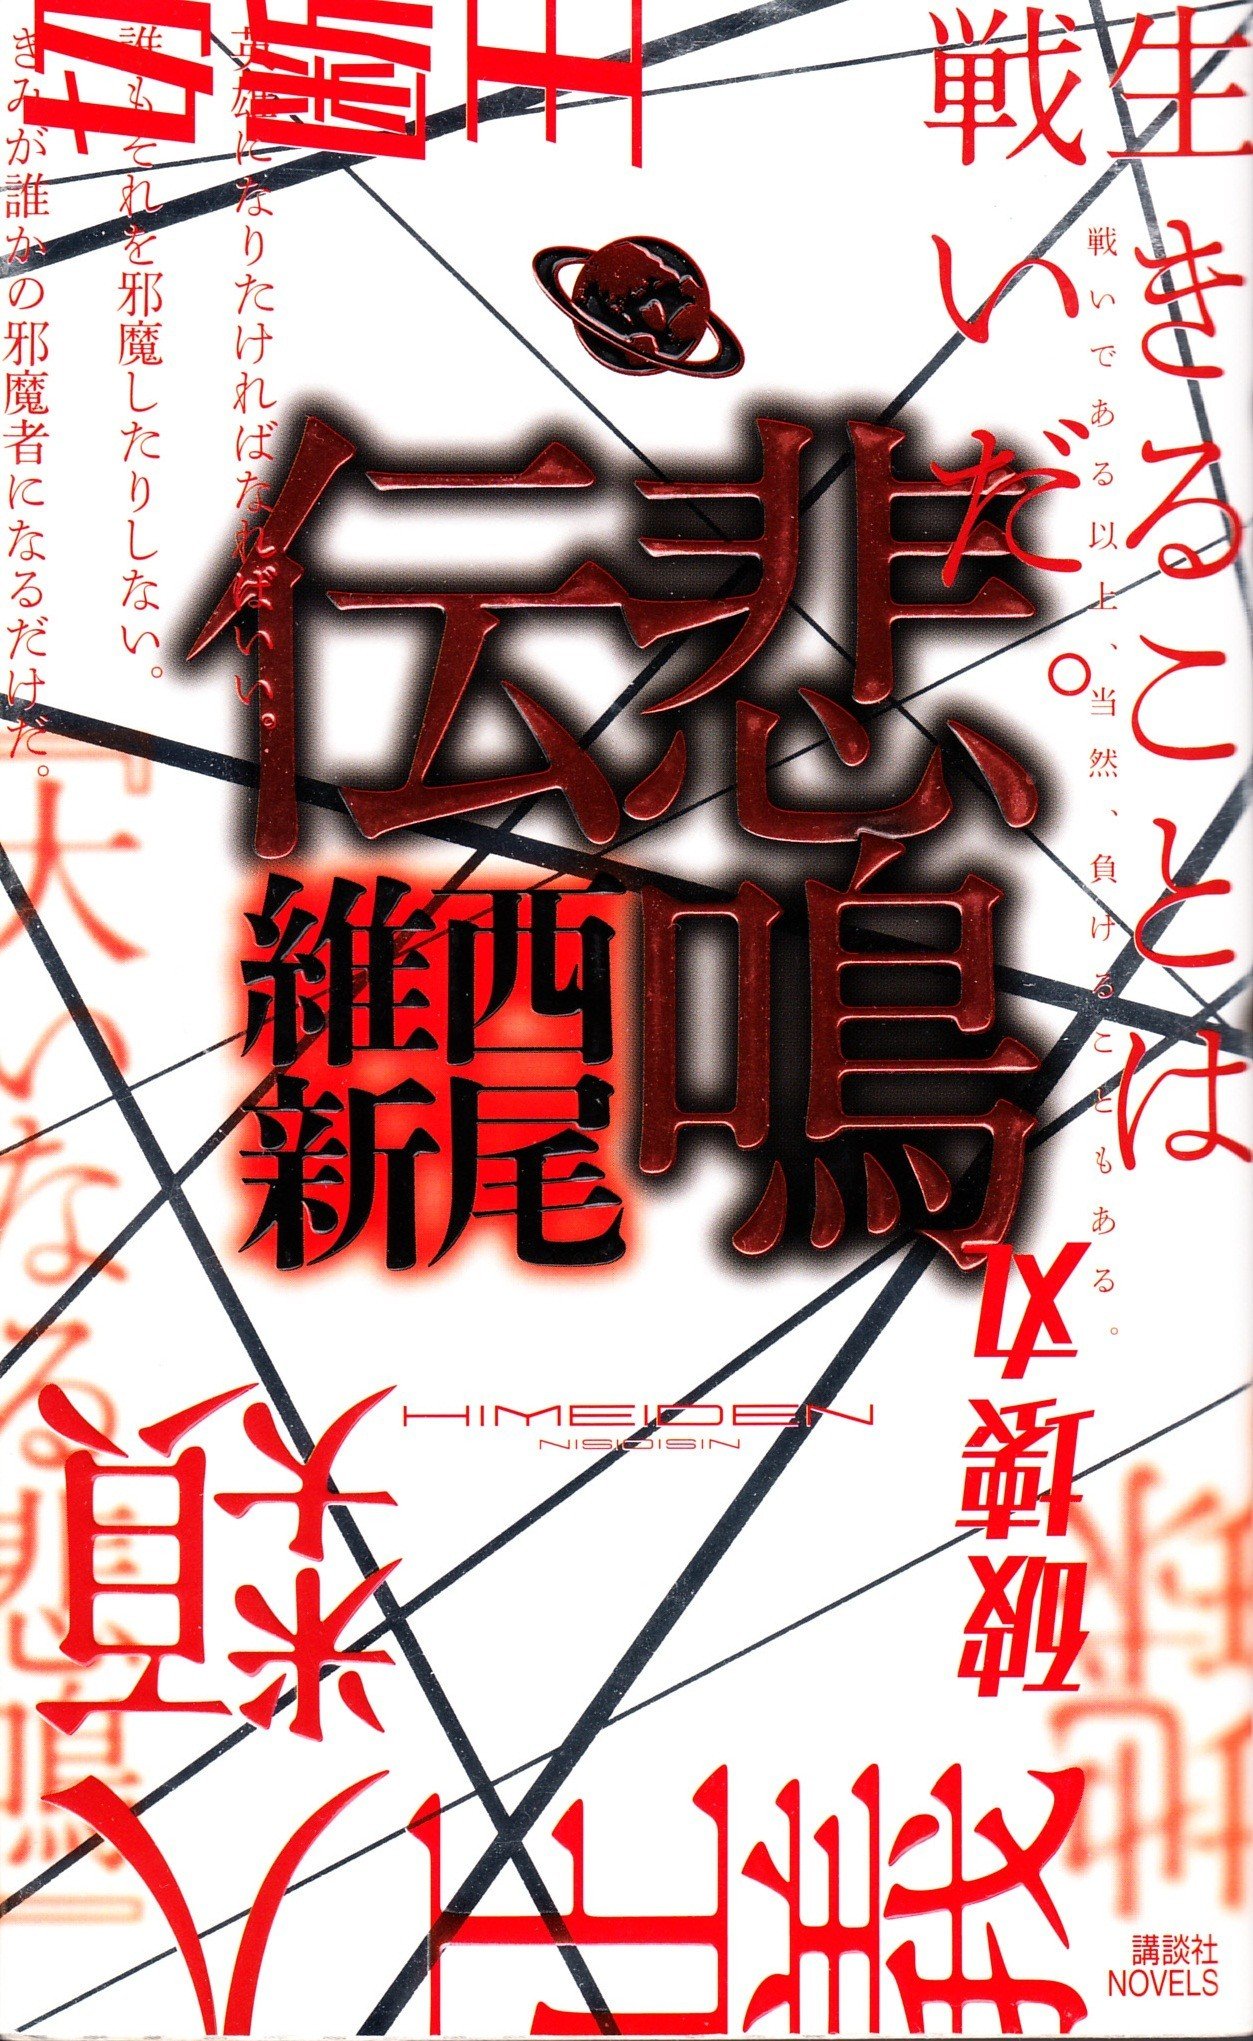 【轻小说】西尾维新 传说系列 EPUB 1-6卷 蓝奏云下载